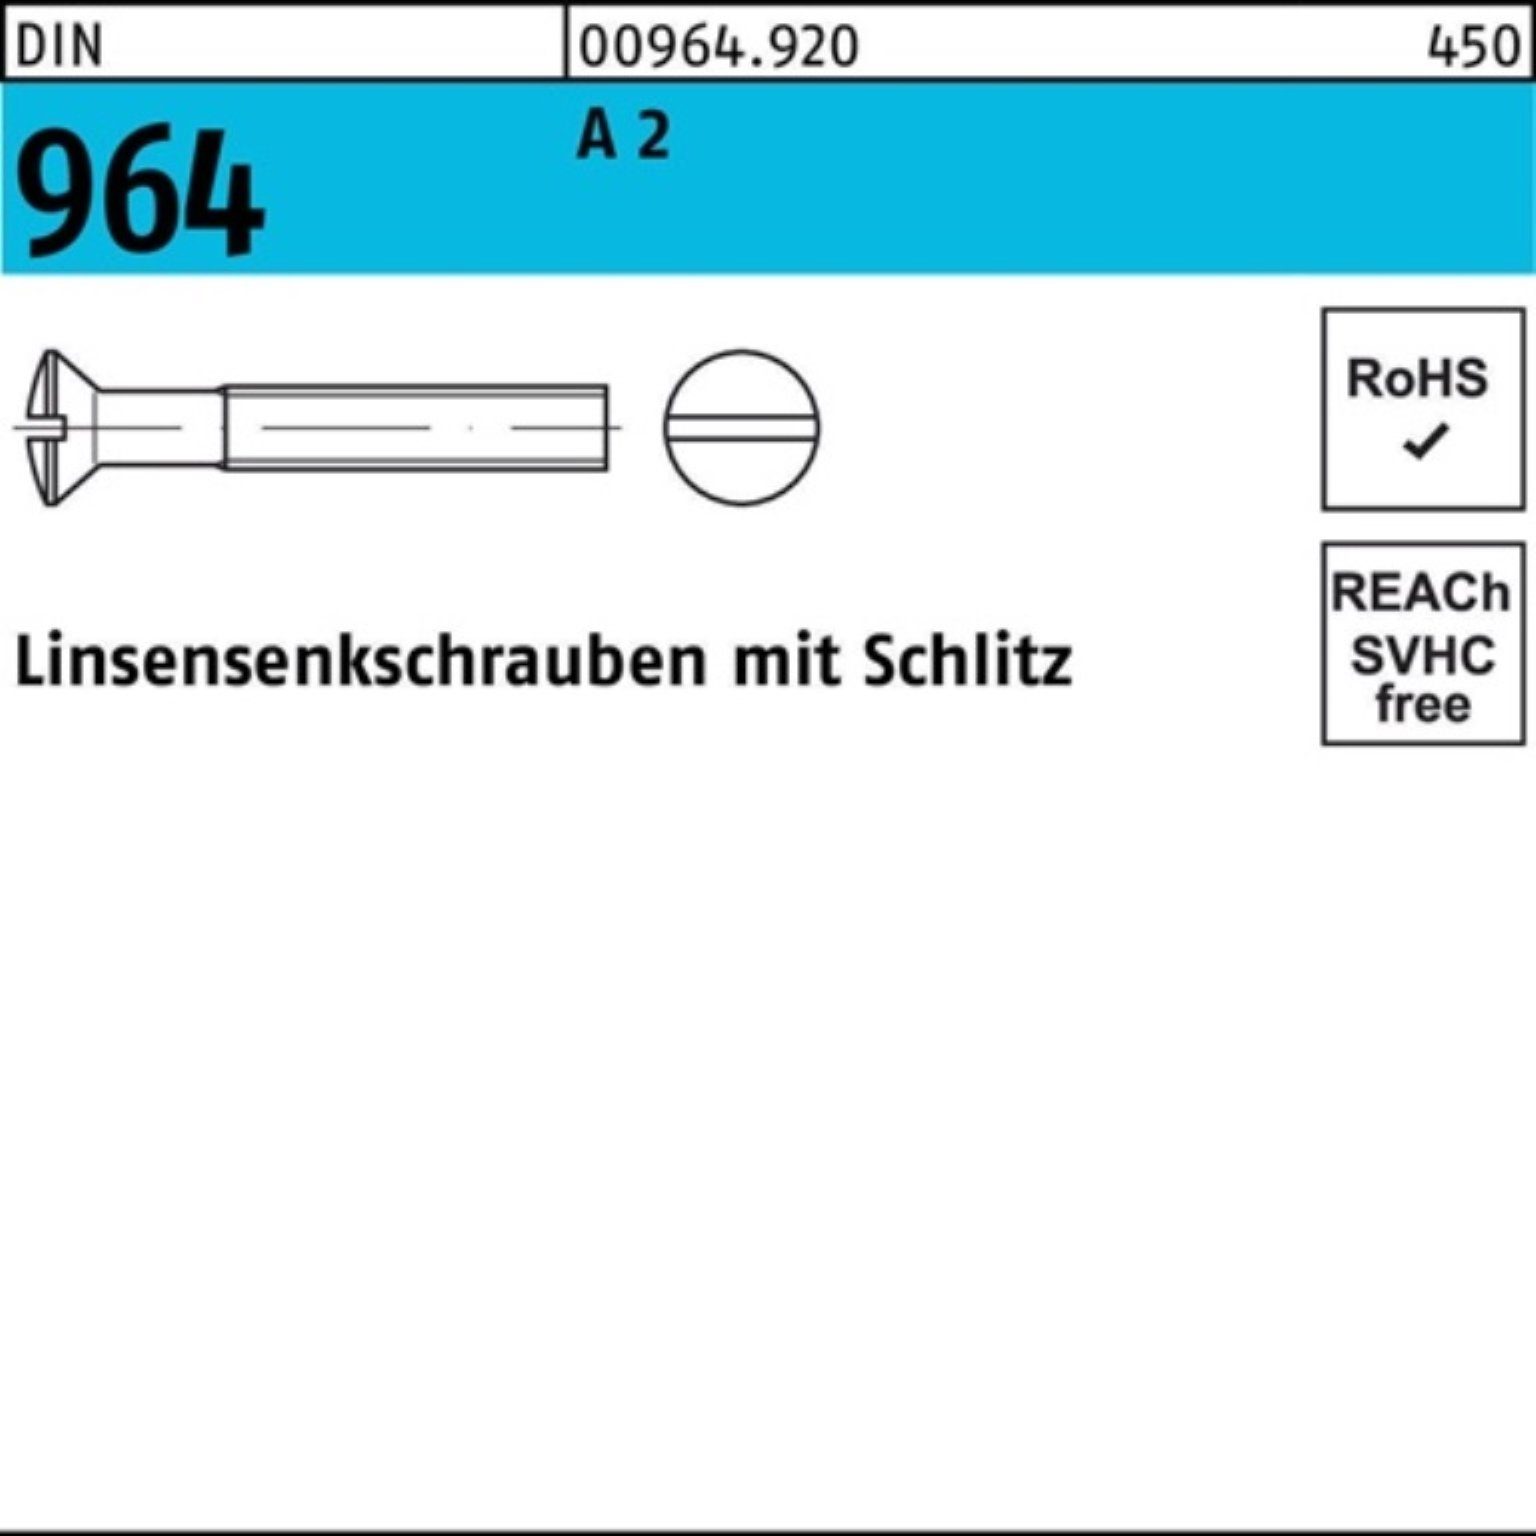 Reyher Linsenschraube 100er M6x Schlitz Pack 964 DIN 100 2 16 DI A Linsensenkschraube Stück